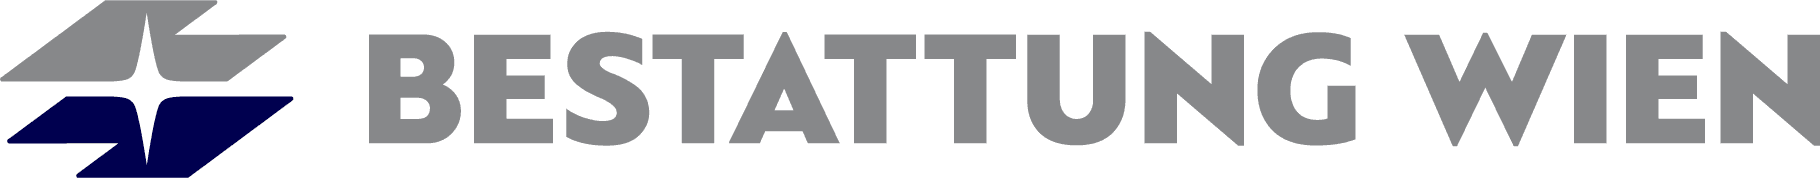 Logo BESTATTUNG WIEN - Kundenservice Simmering Zentrale